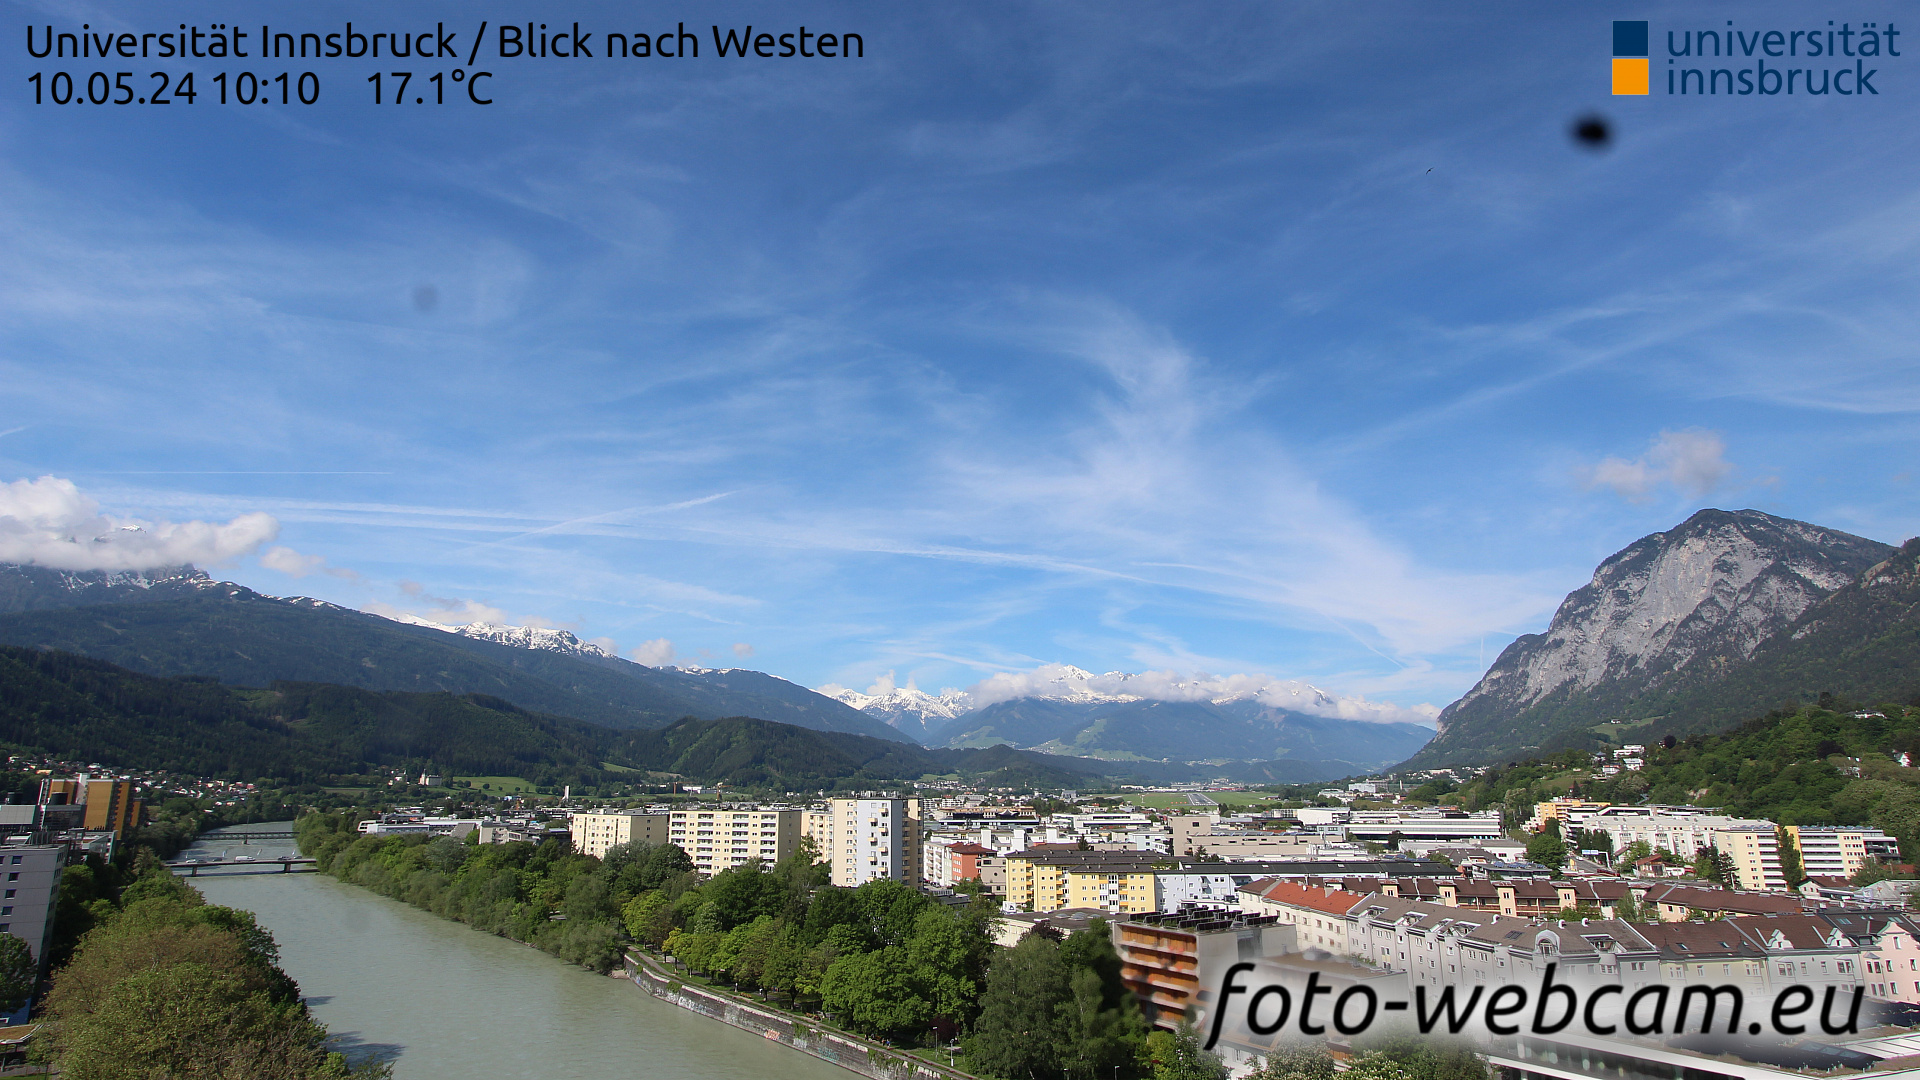 Innsbruck Thu. 10:17